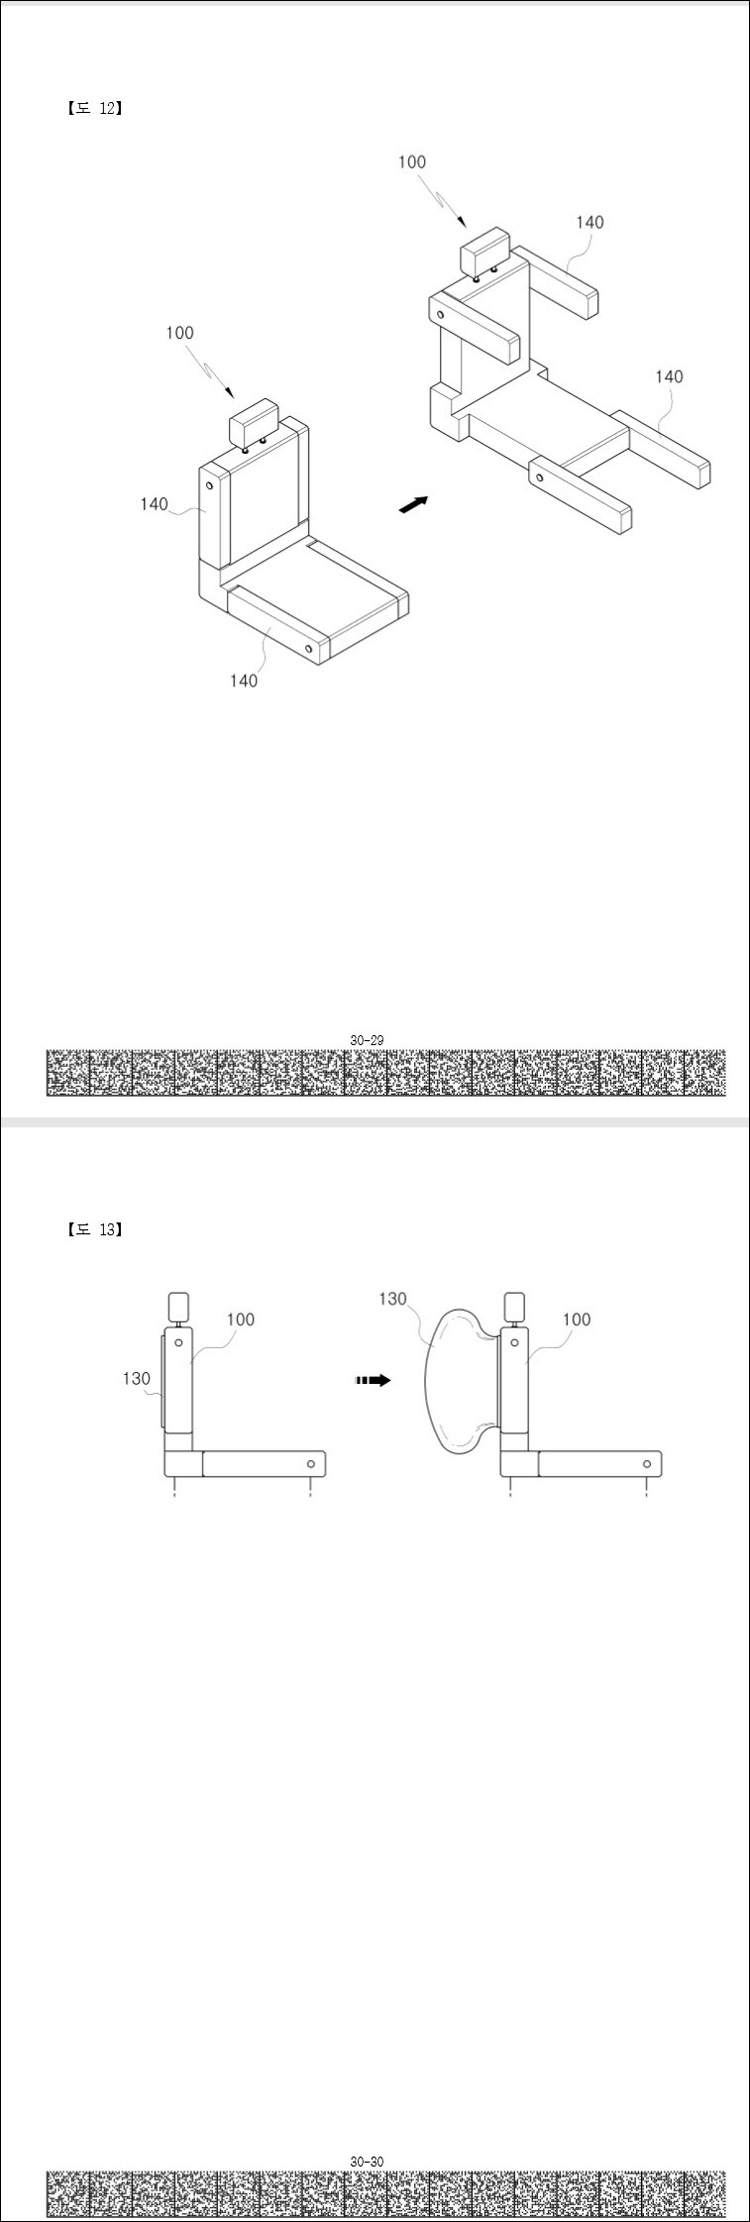 특허 제10-2104538호(자동차용 비상탈출장치, 황호찬)